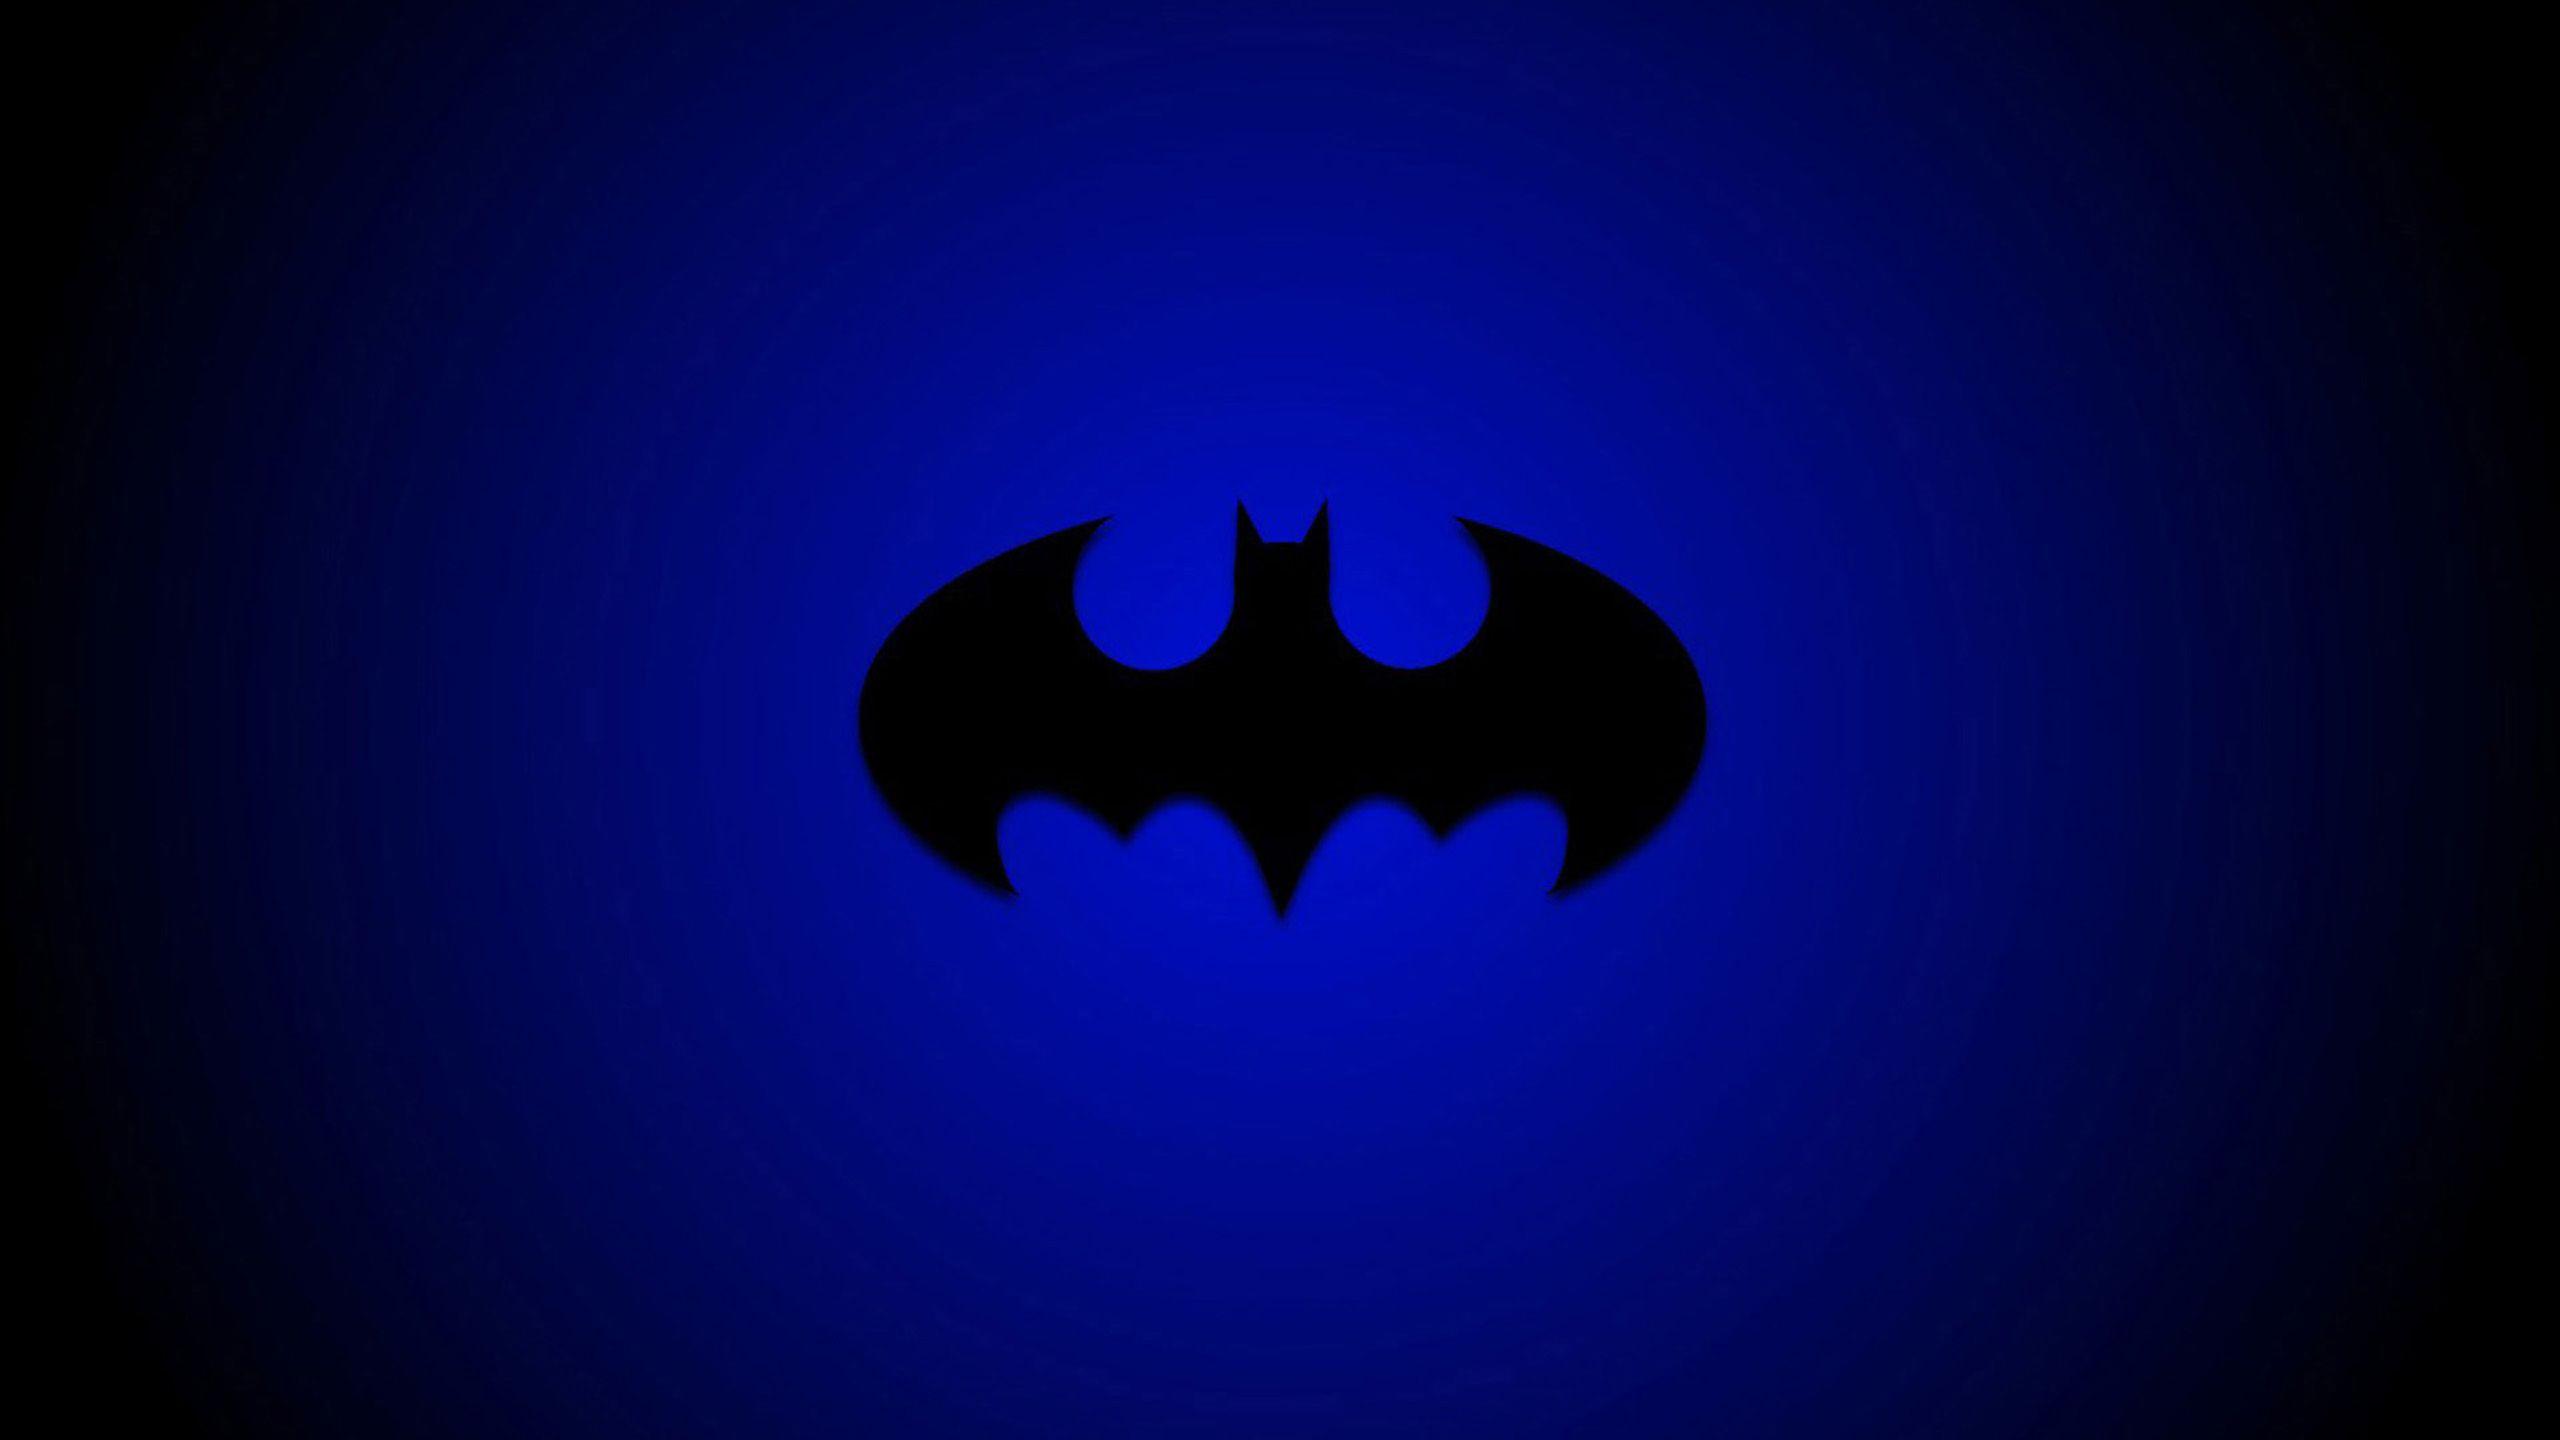 Batman Logo HD Black Backgrounds - Wallpaper Cave